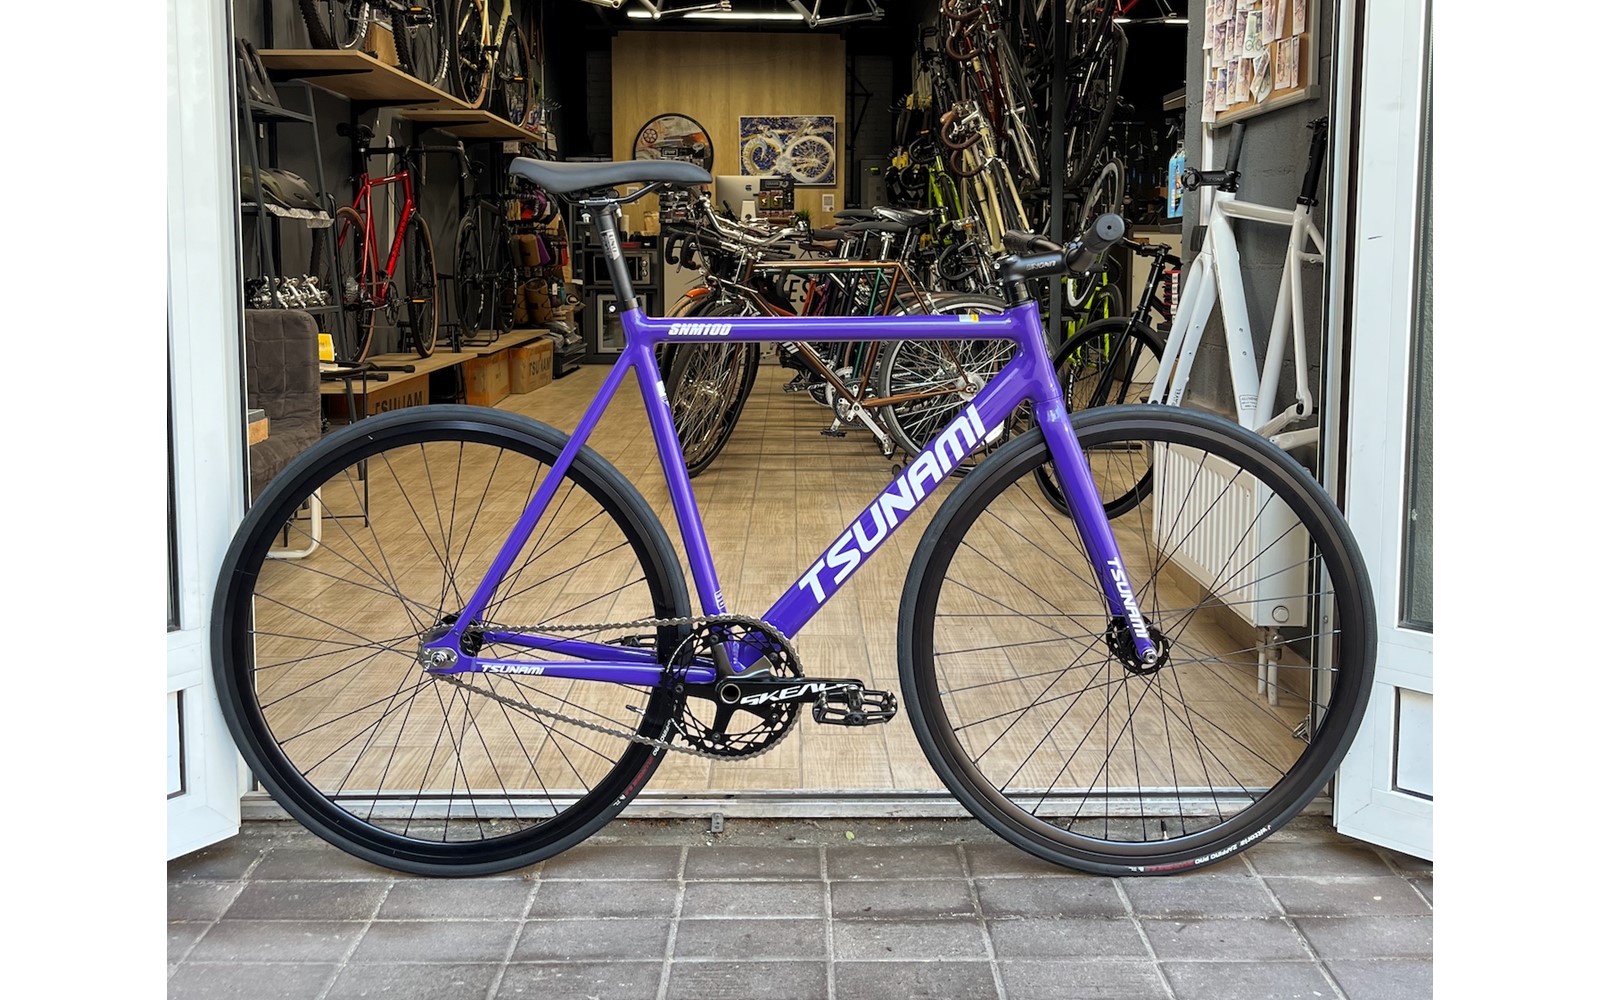 Велосипед Tsunami SNM100 фиолетовый за 2149,99 руб. в магазине городских велосипедов City Bikes в Минске.